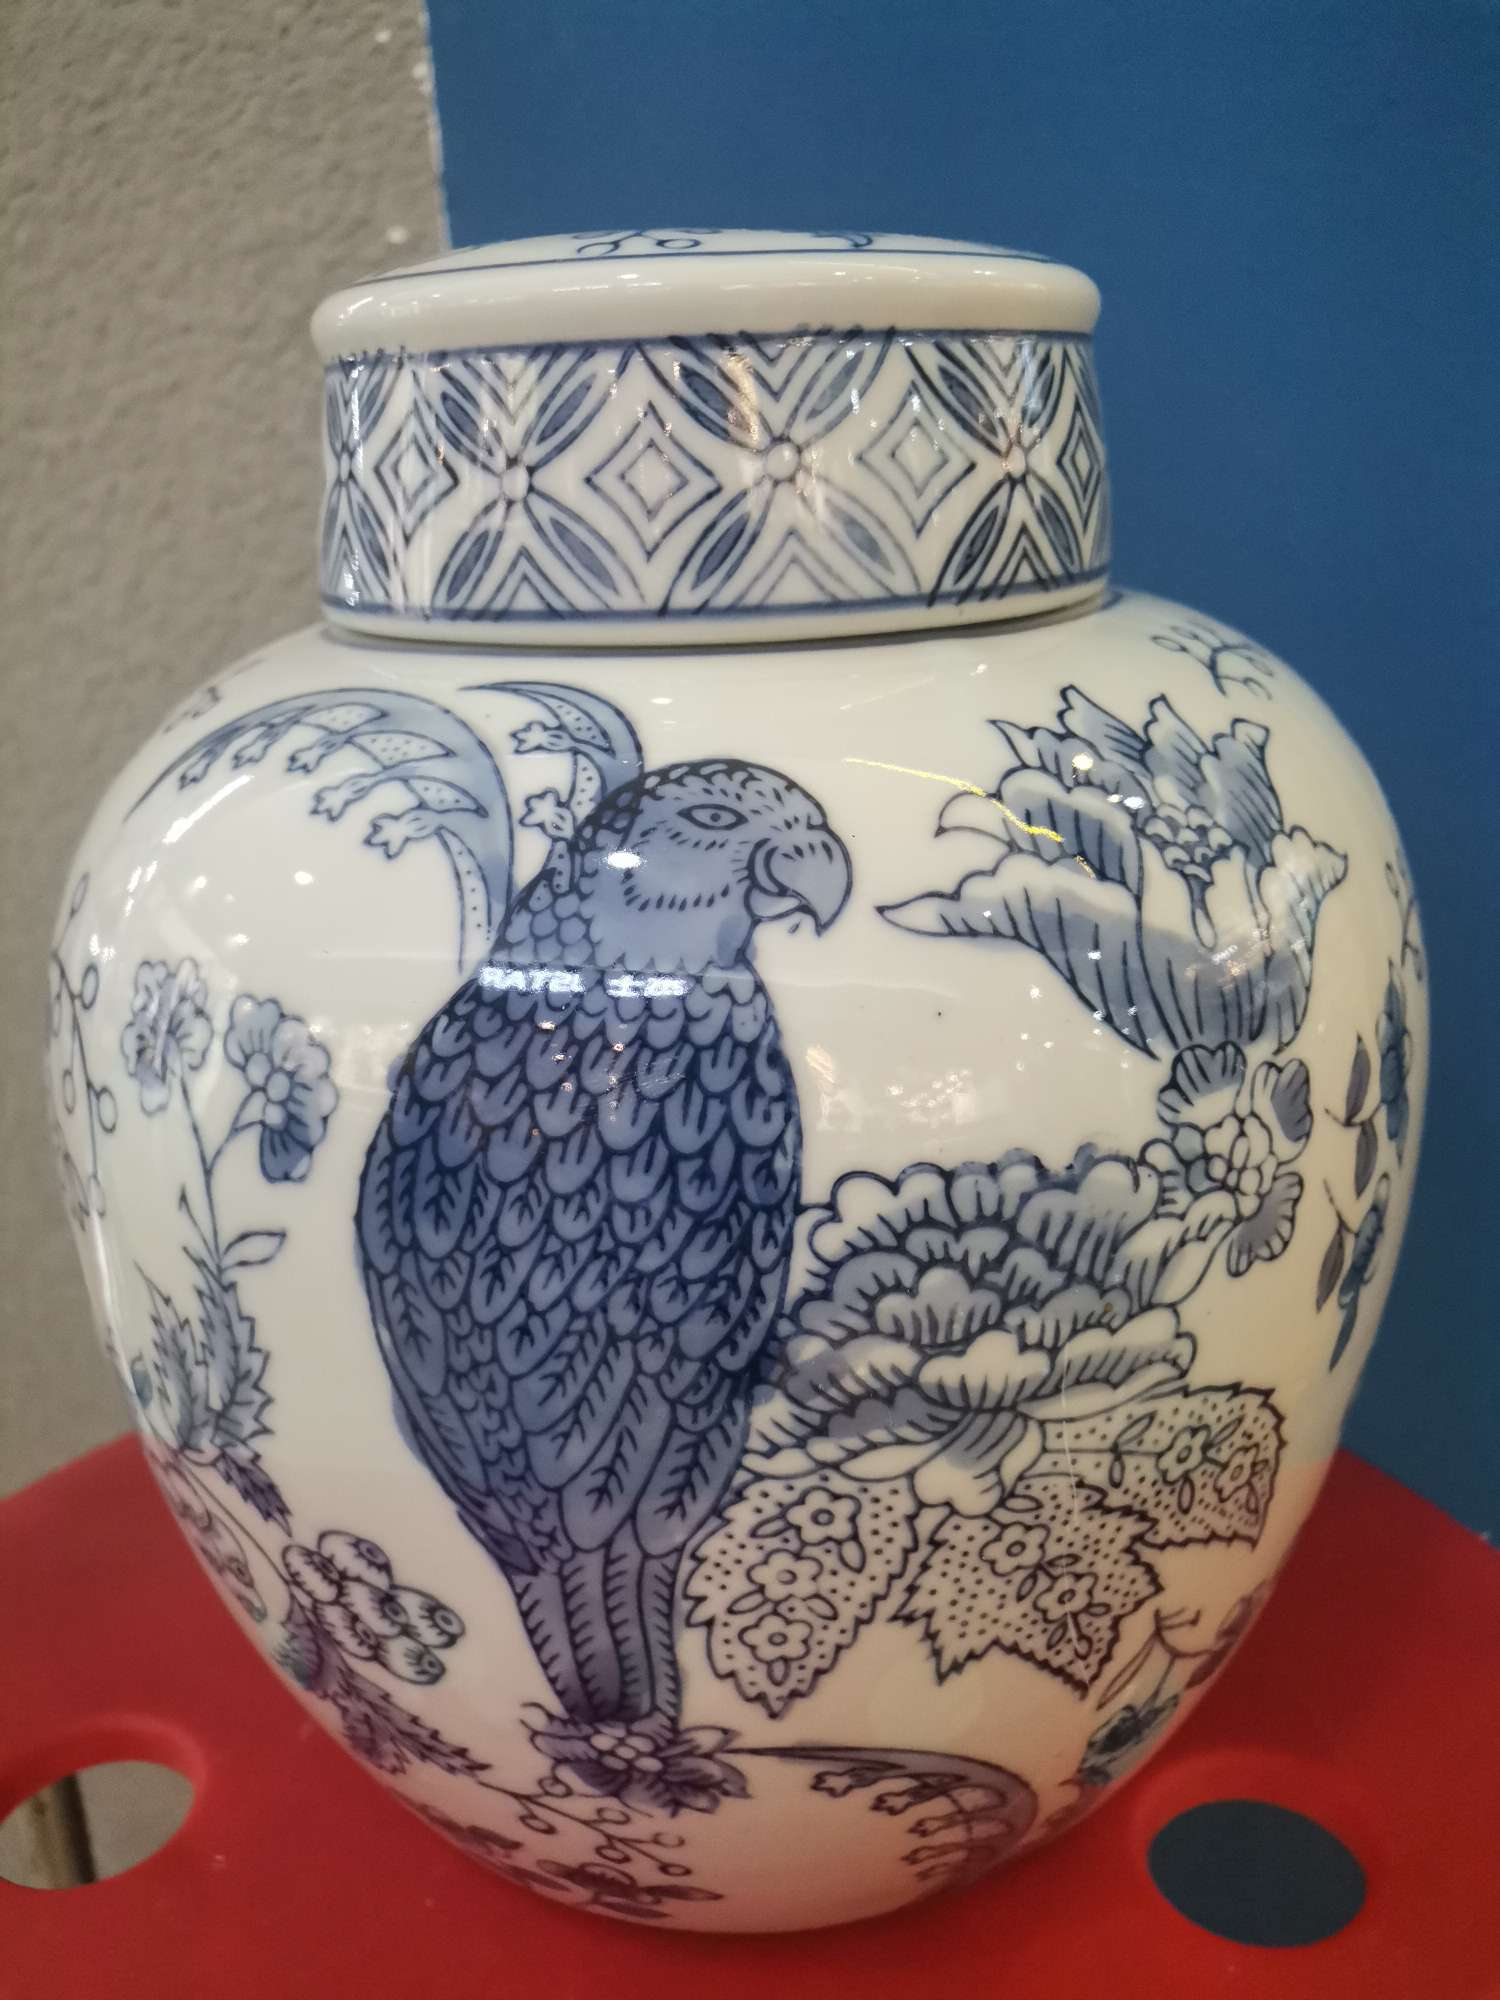 陶瓷罐  茶叶罐  将军罐  食品罐  青花瓷，瓷器  手绘花瓶  家居摆件  饰品  装饰品  